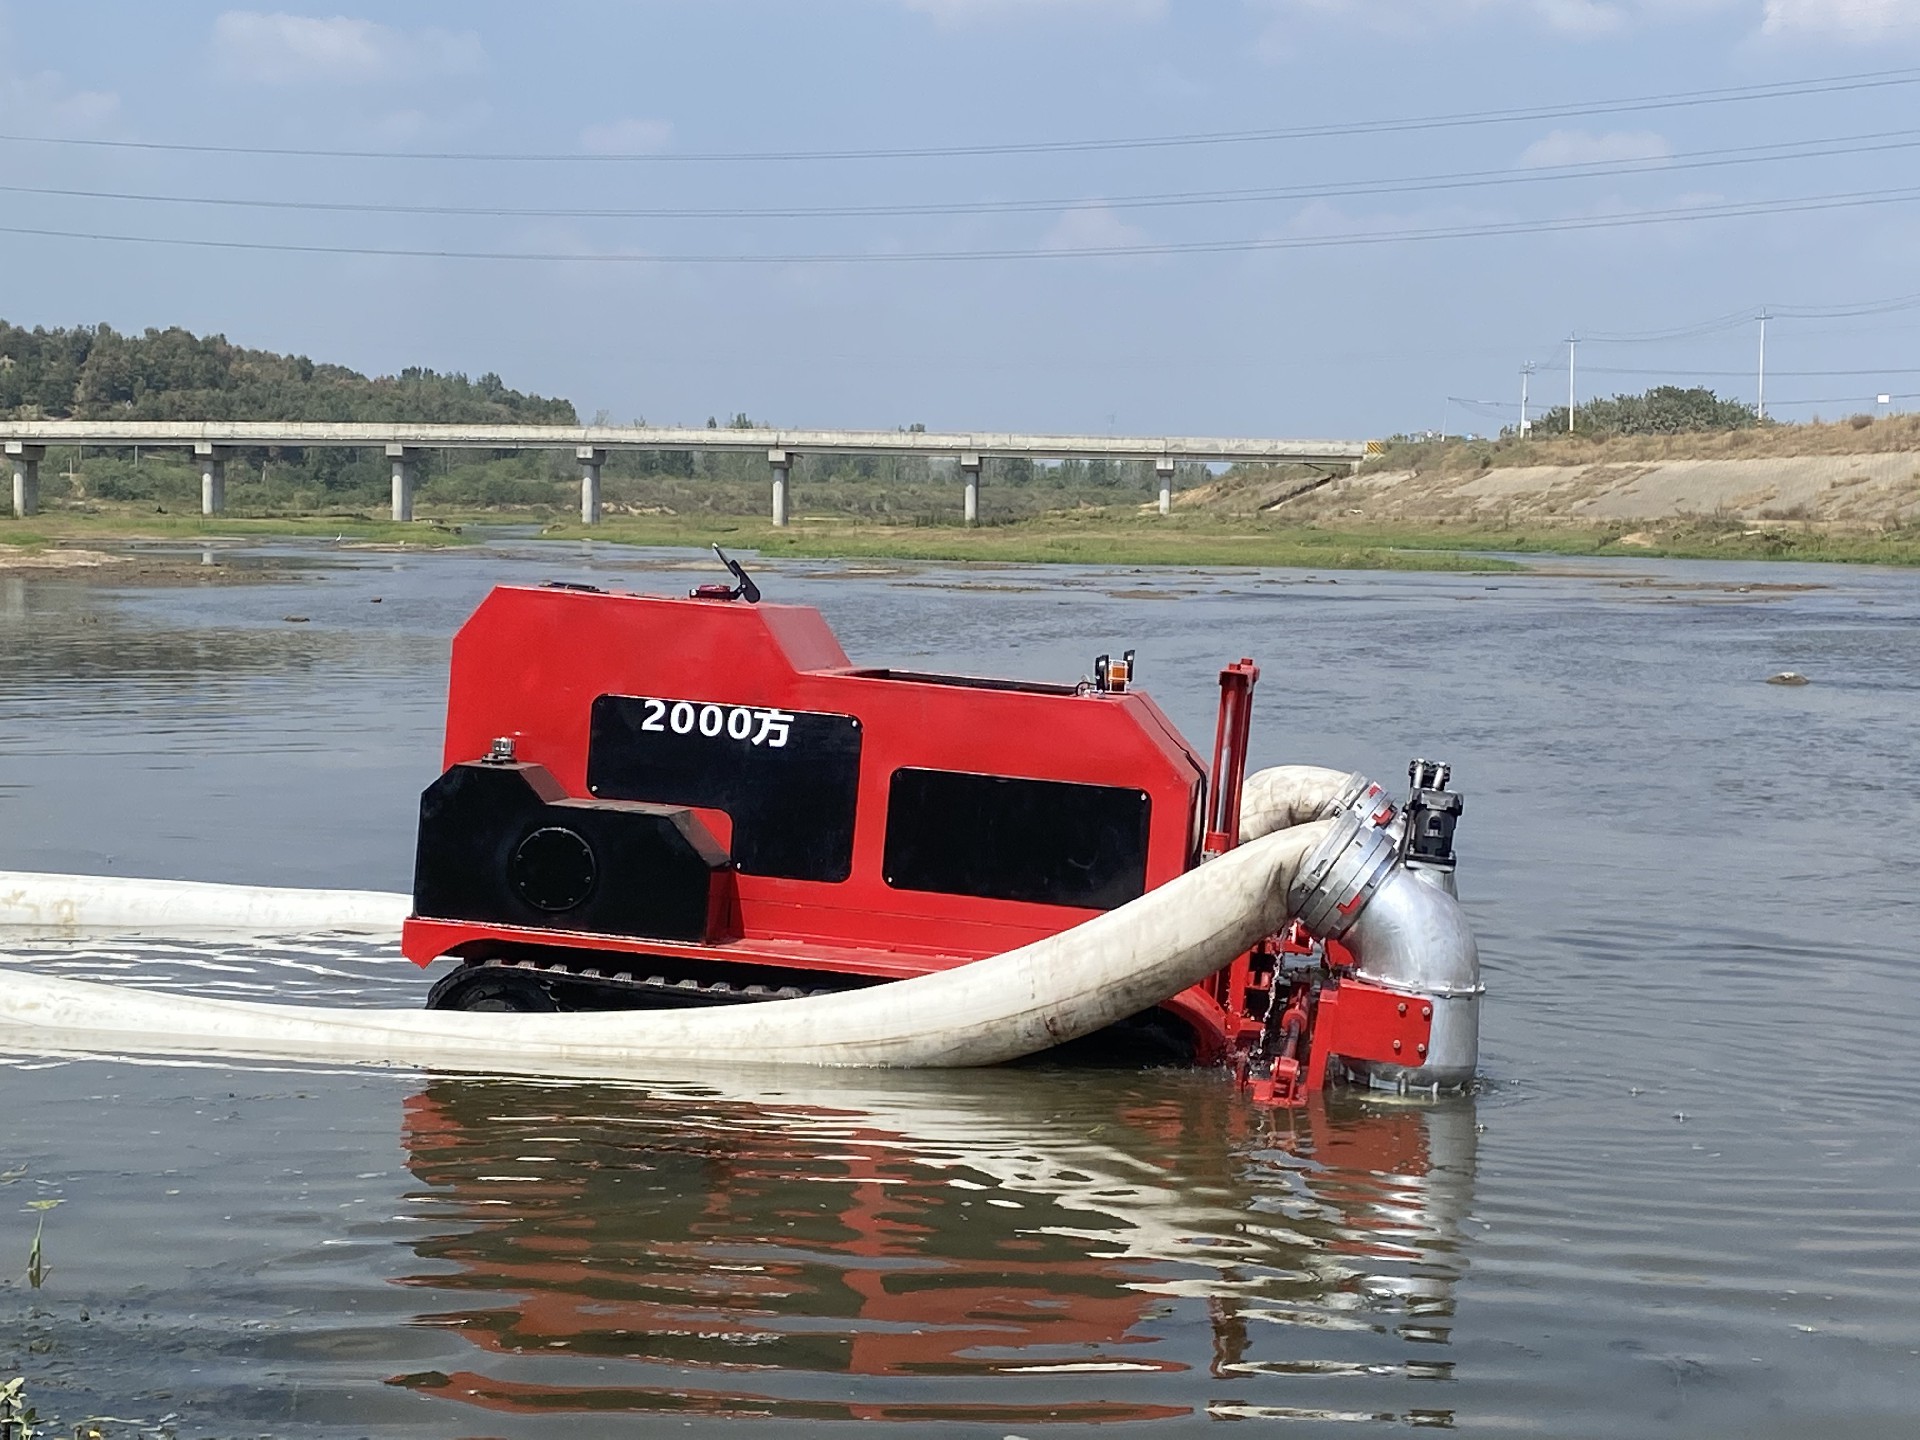 自带动力履带式防汛排水机器人